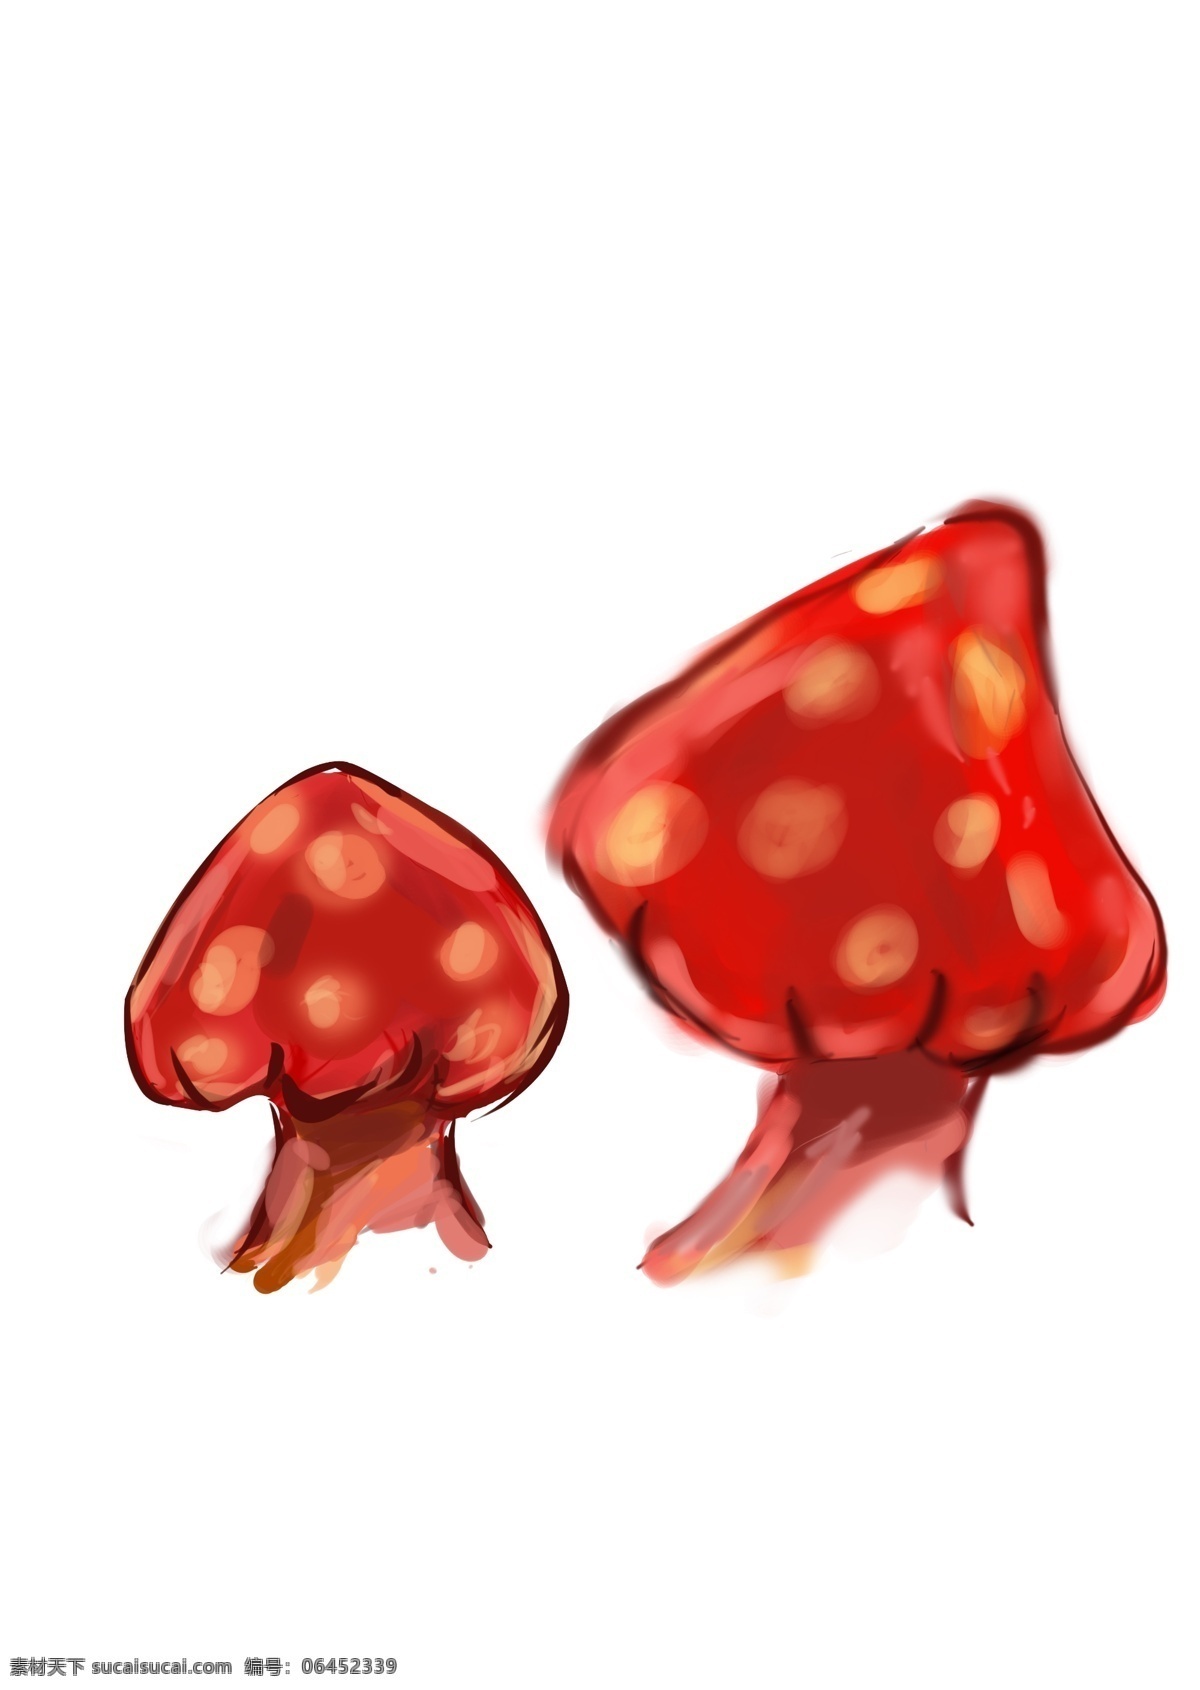 分层 插画 红色 卡通 蘑菇 手绘 源文件 模板下载 手绘蘑菇 插画集